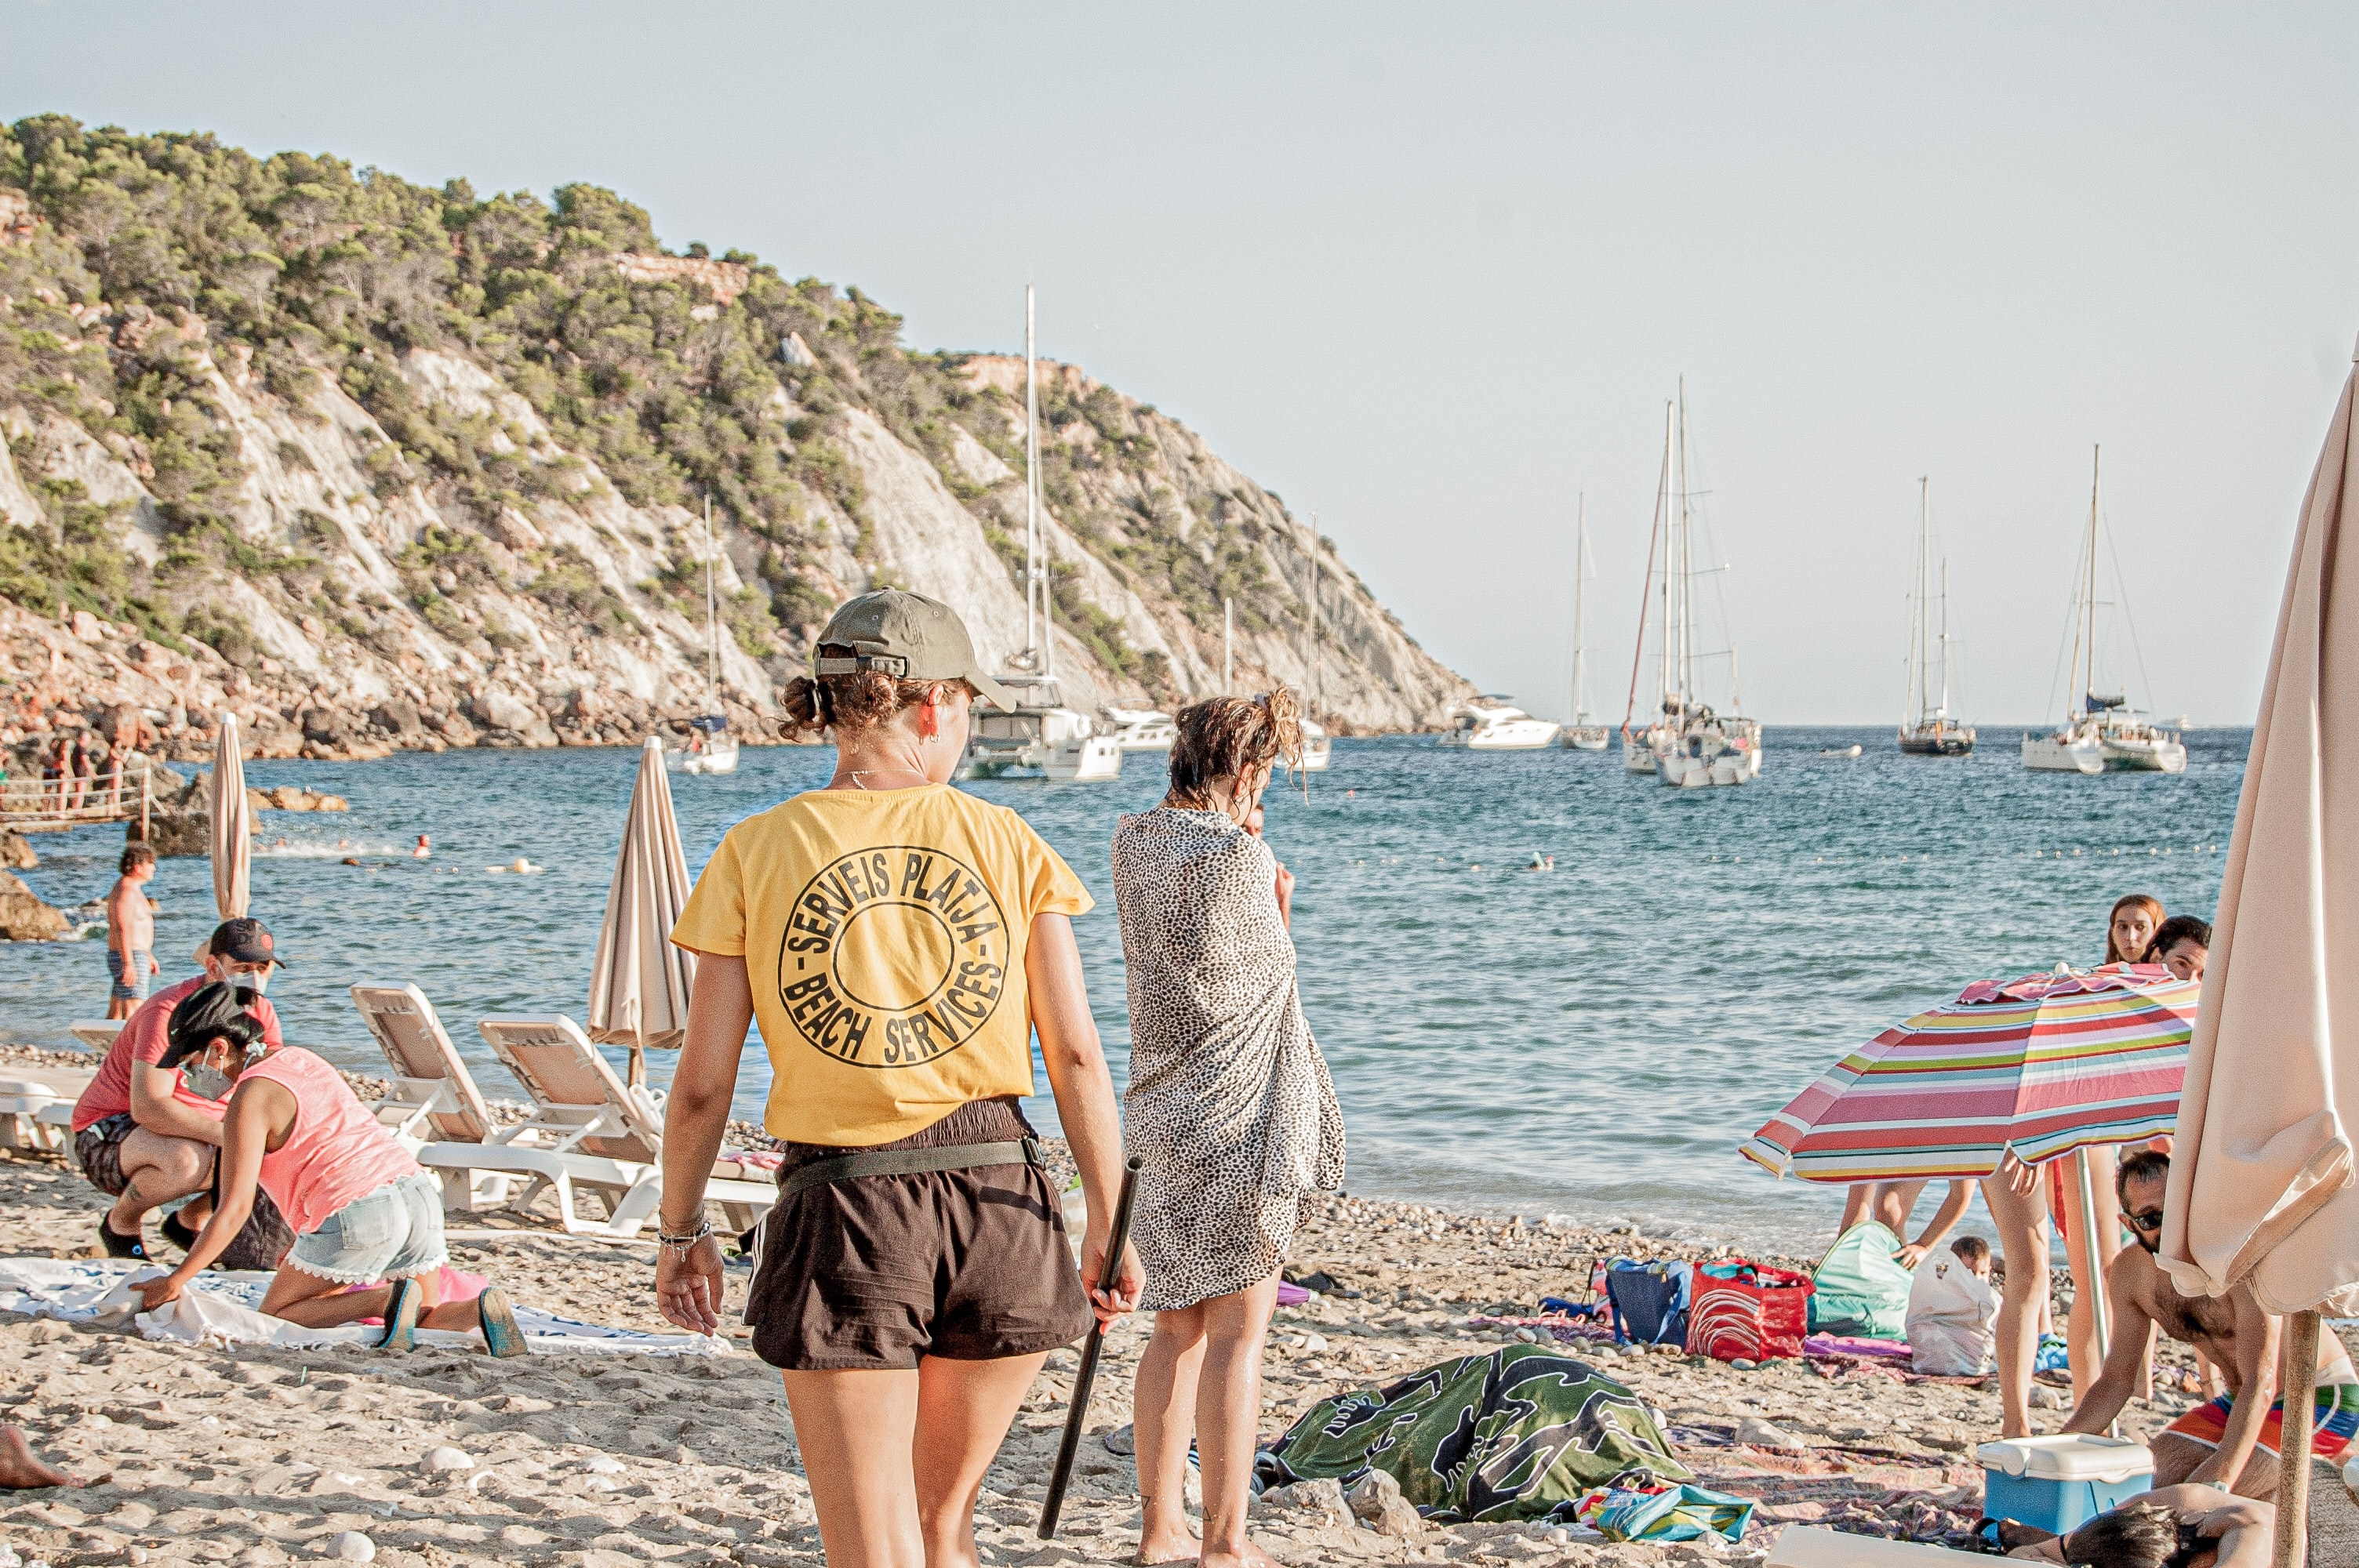 Els salaris es disparen a Canàries (12%) i Balears (8,7%) pel turisme